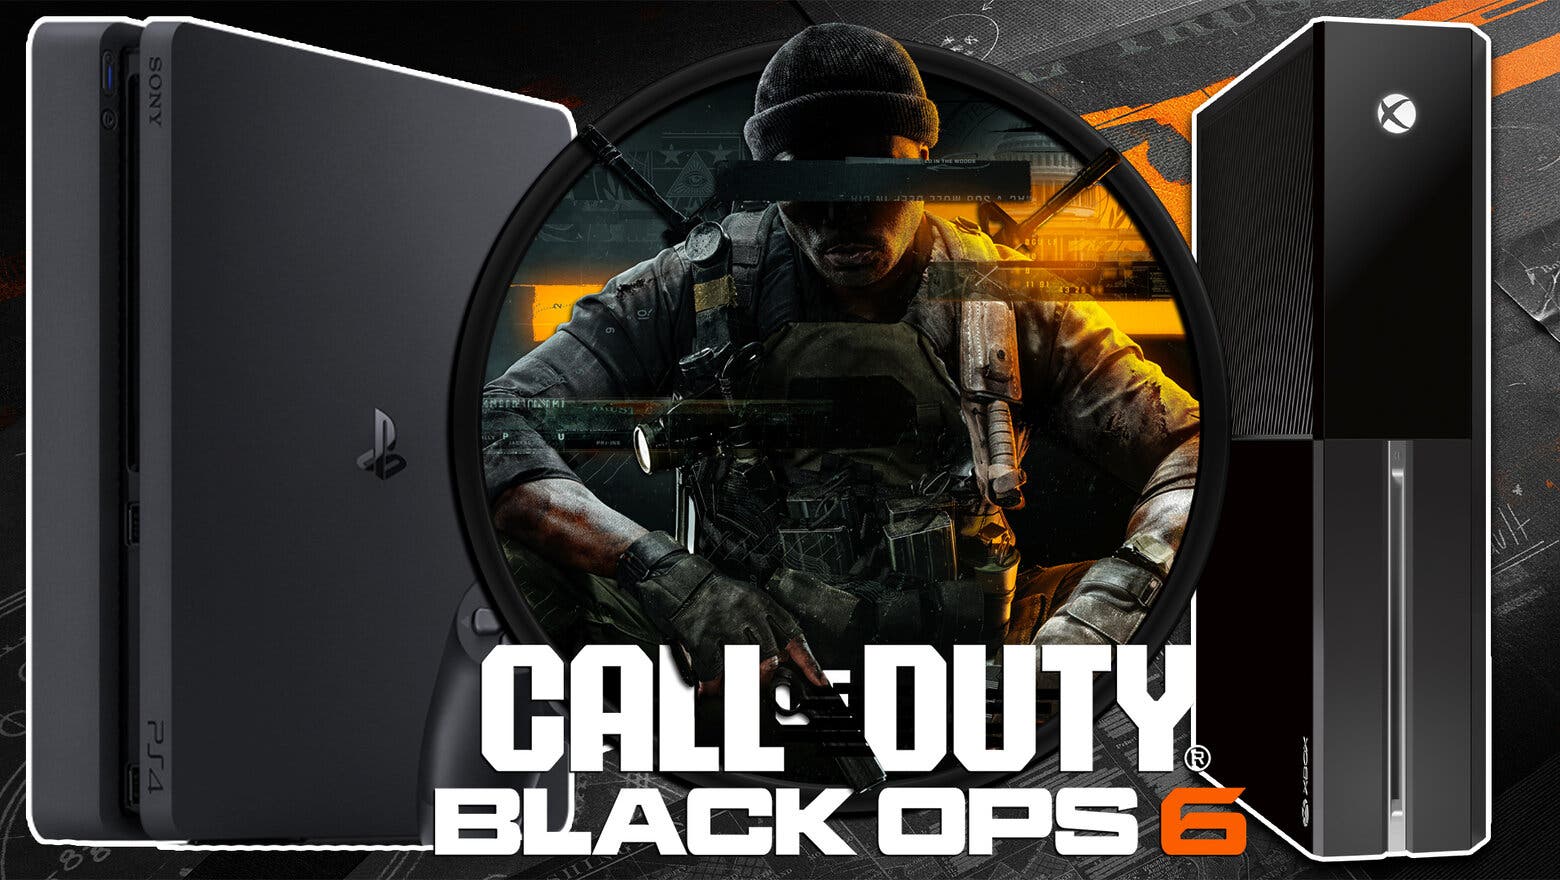 ¿Puede ser Black Ops 6 el último Call of Duty de PS4 y Xbox One? Esta es mi opinión